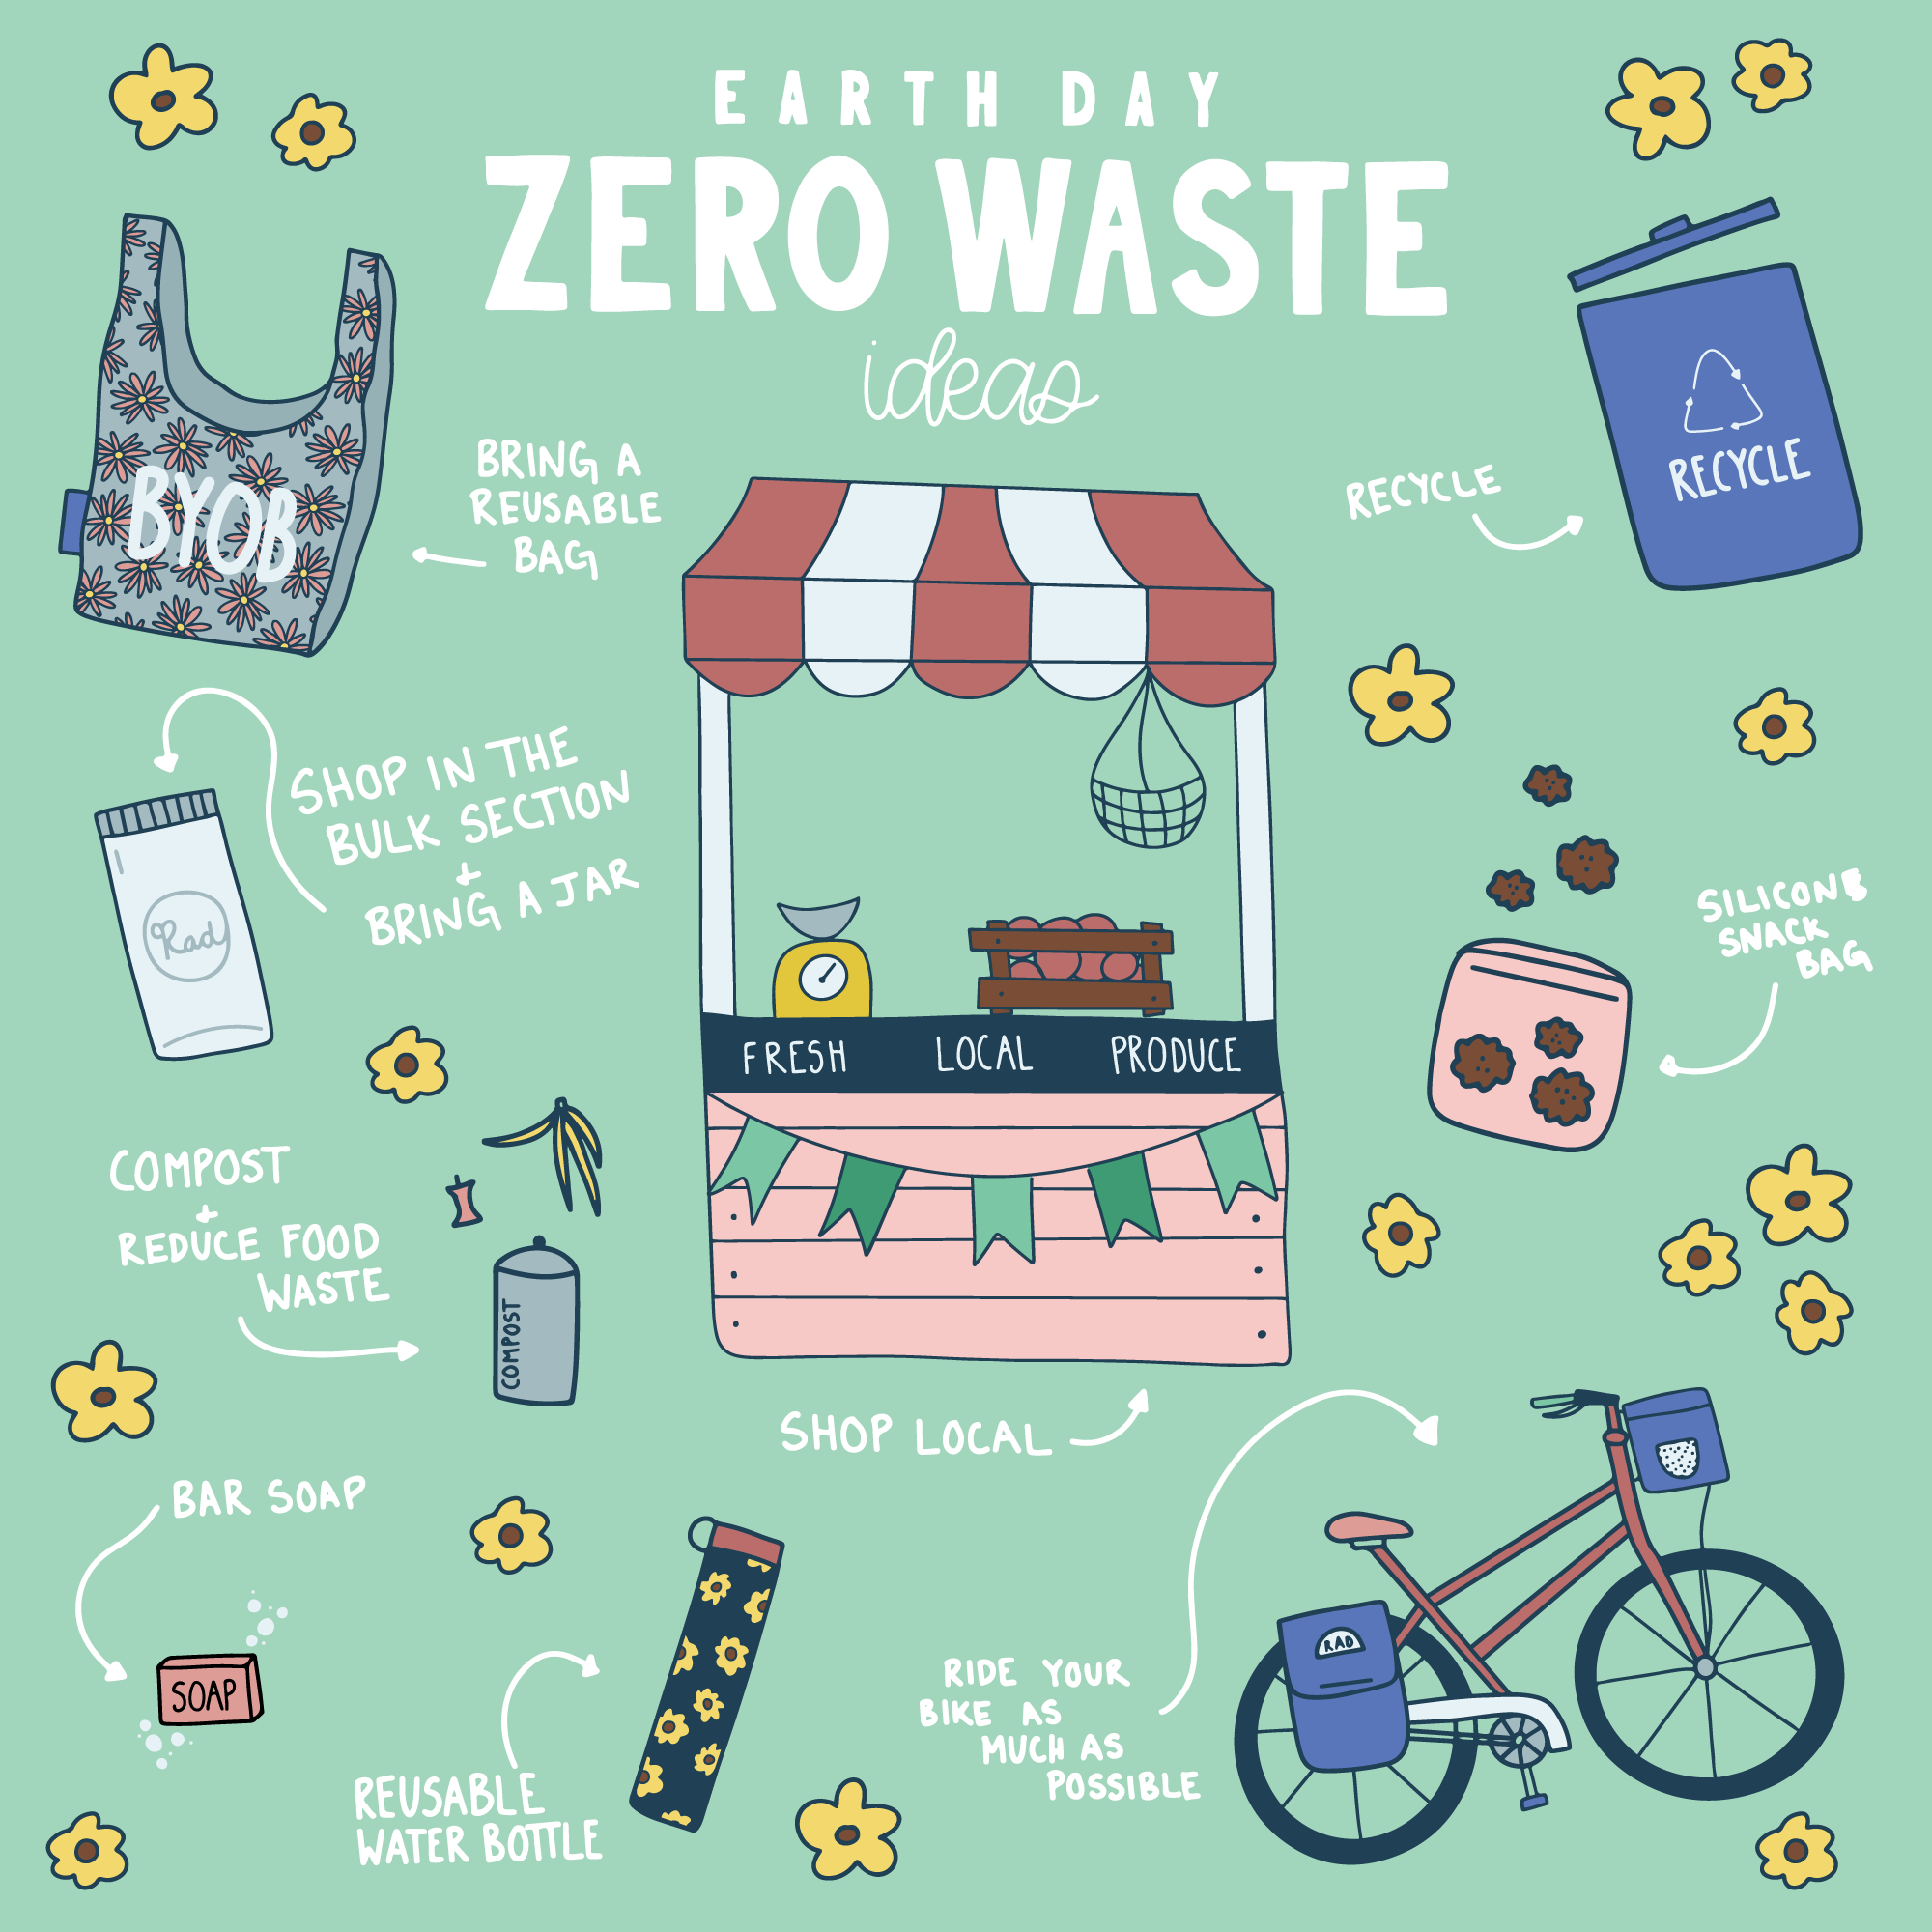 zero-waste.png